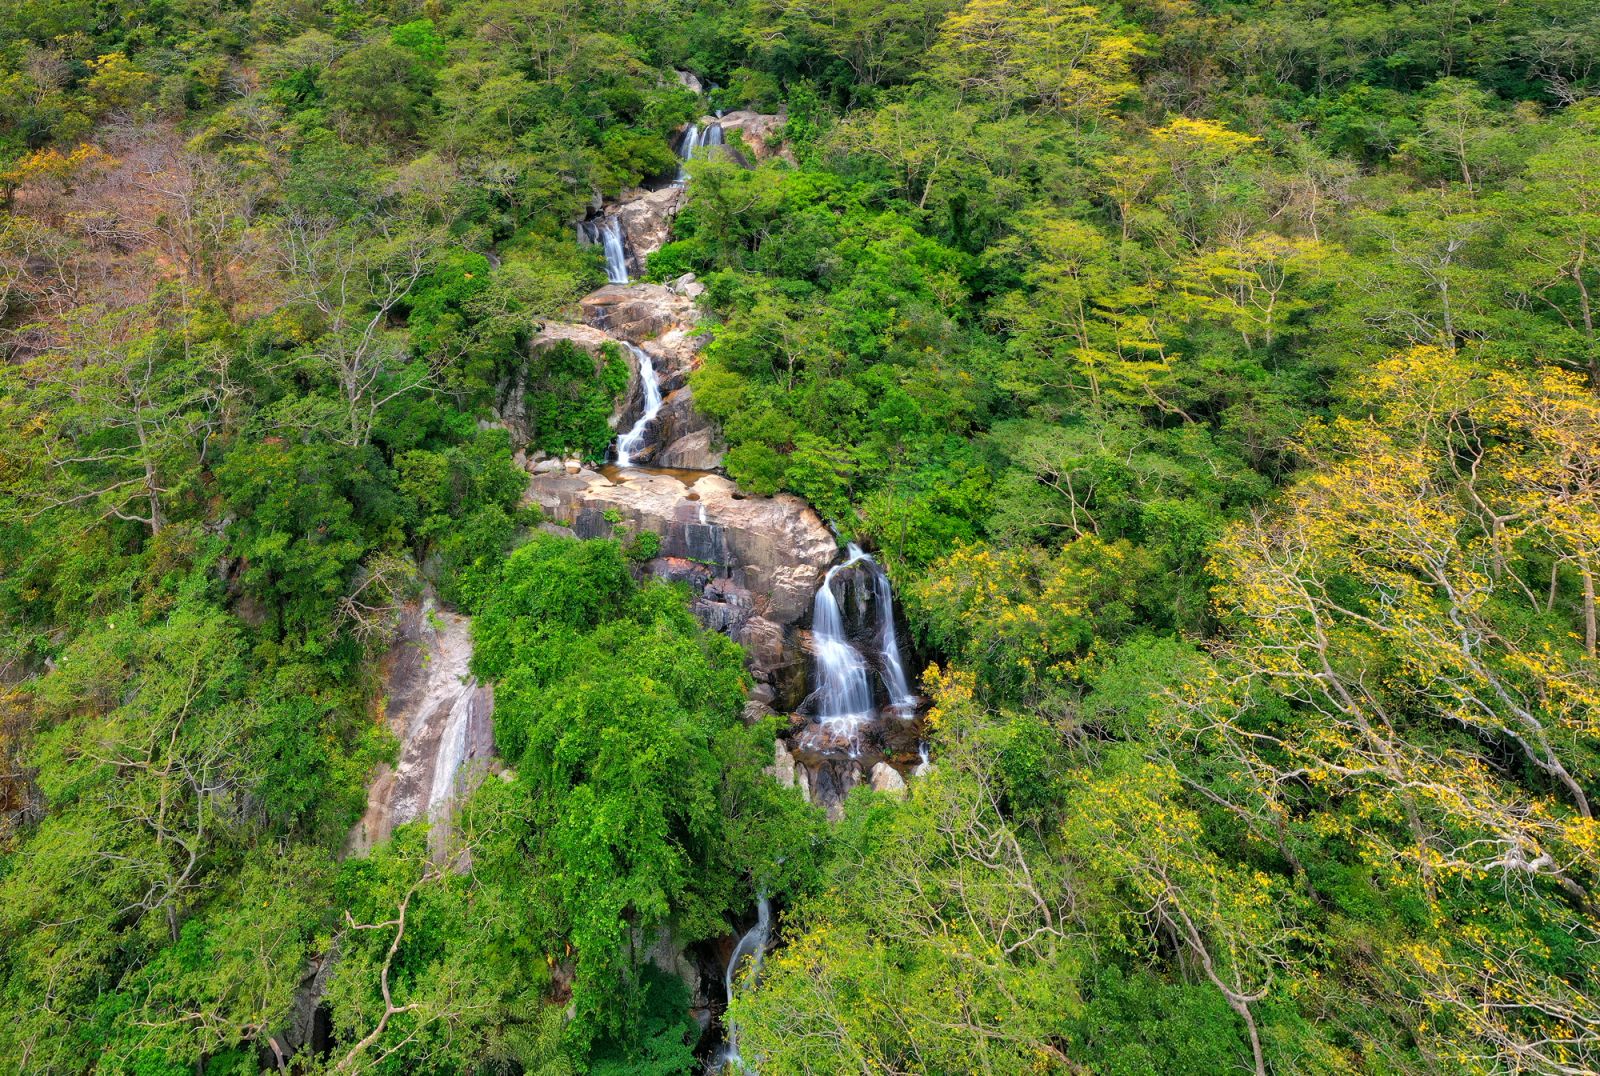 Phát triển du lịch sinh thái là mấu chốt để bảo vệ rừng, giữ rừng cho tương lai- Ảnh 2.